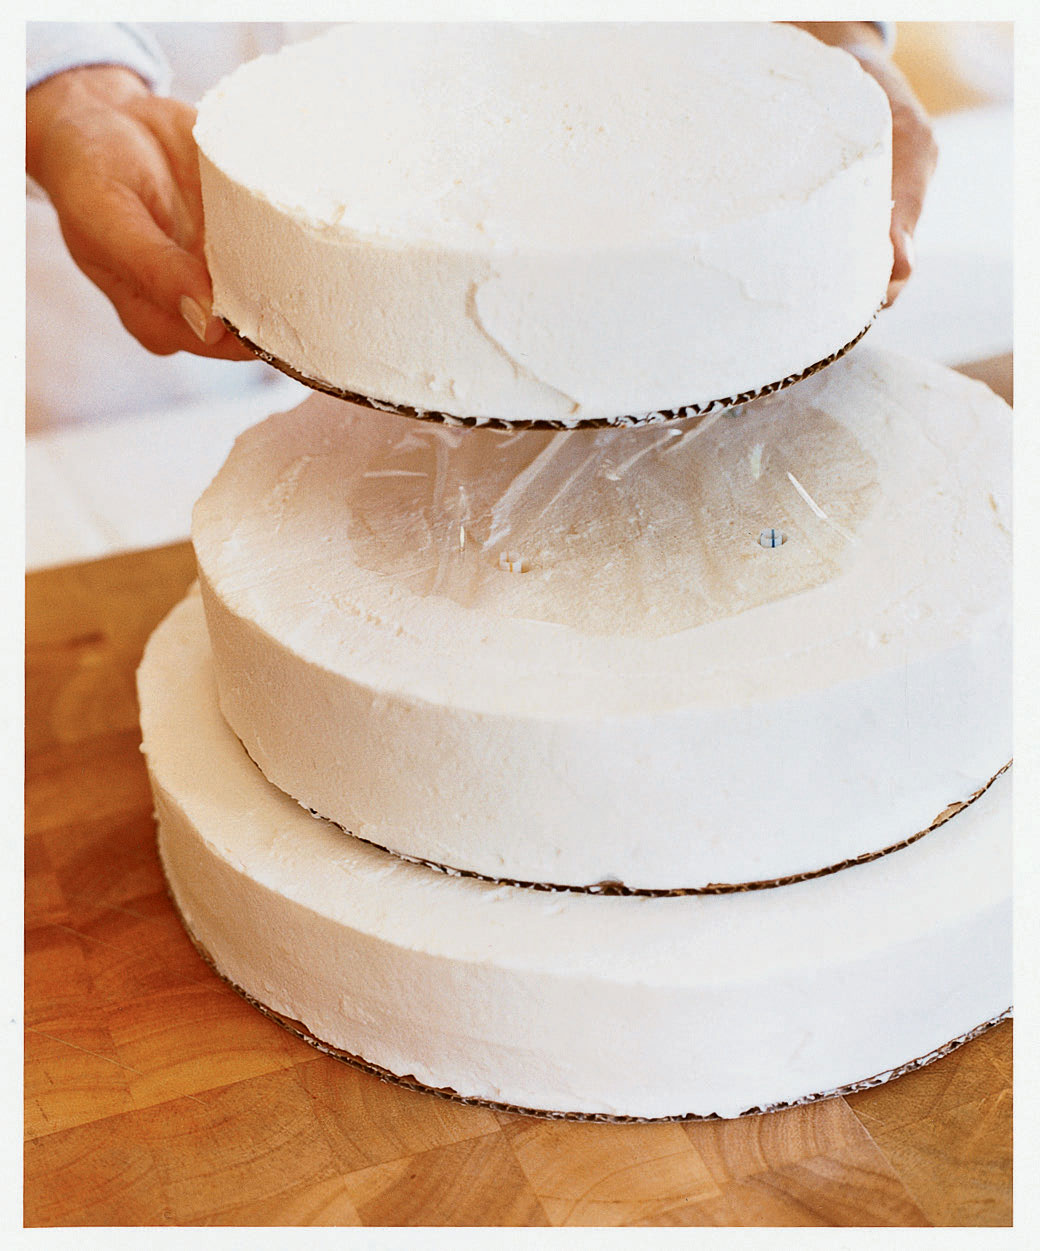 How to make a wedding cake